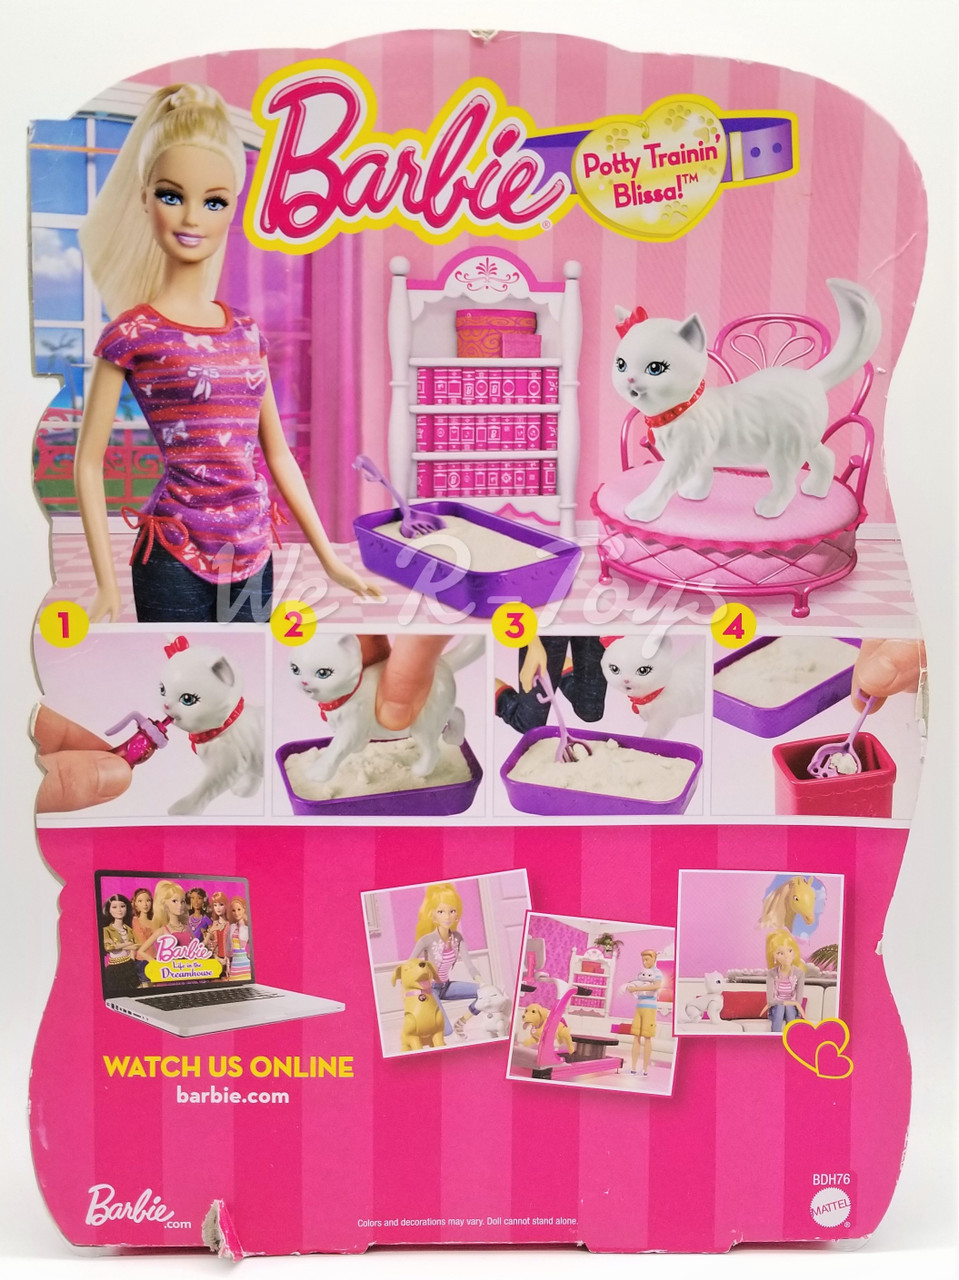 aristidis d recommends Barbie Games Potty Race